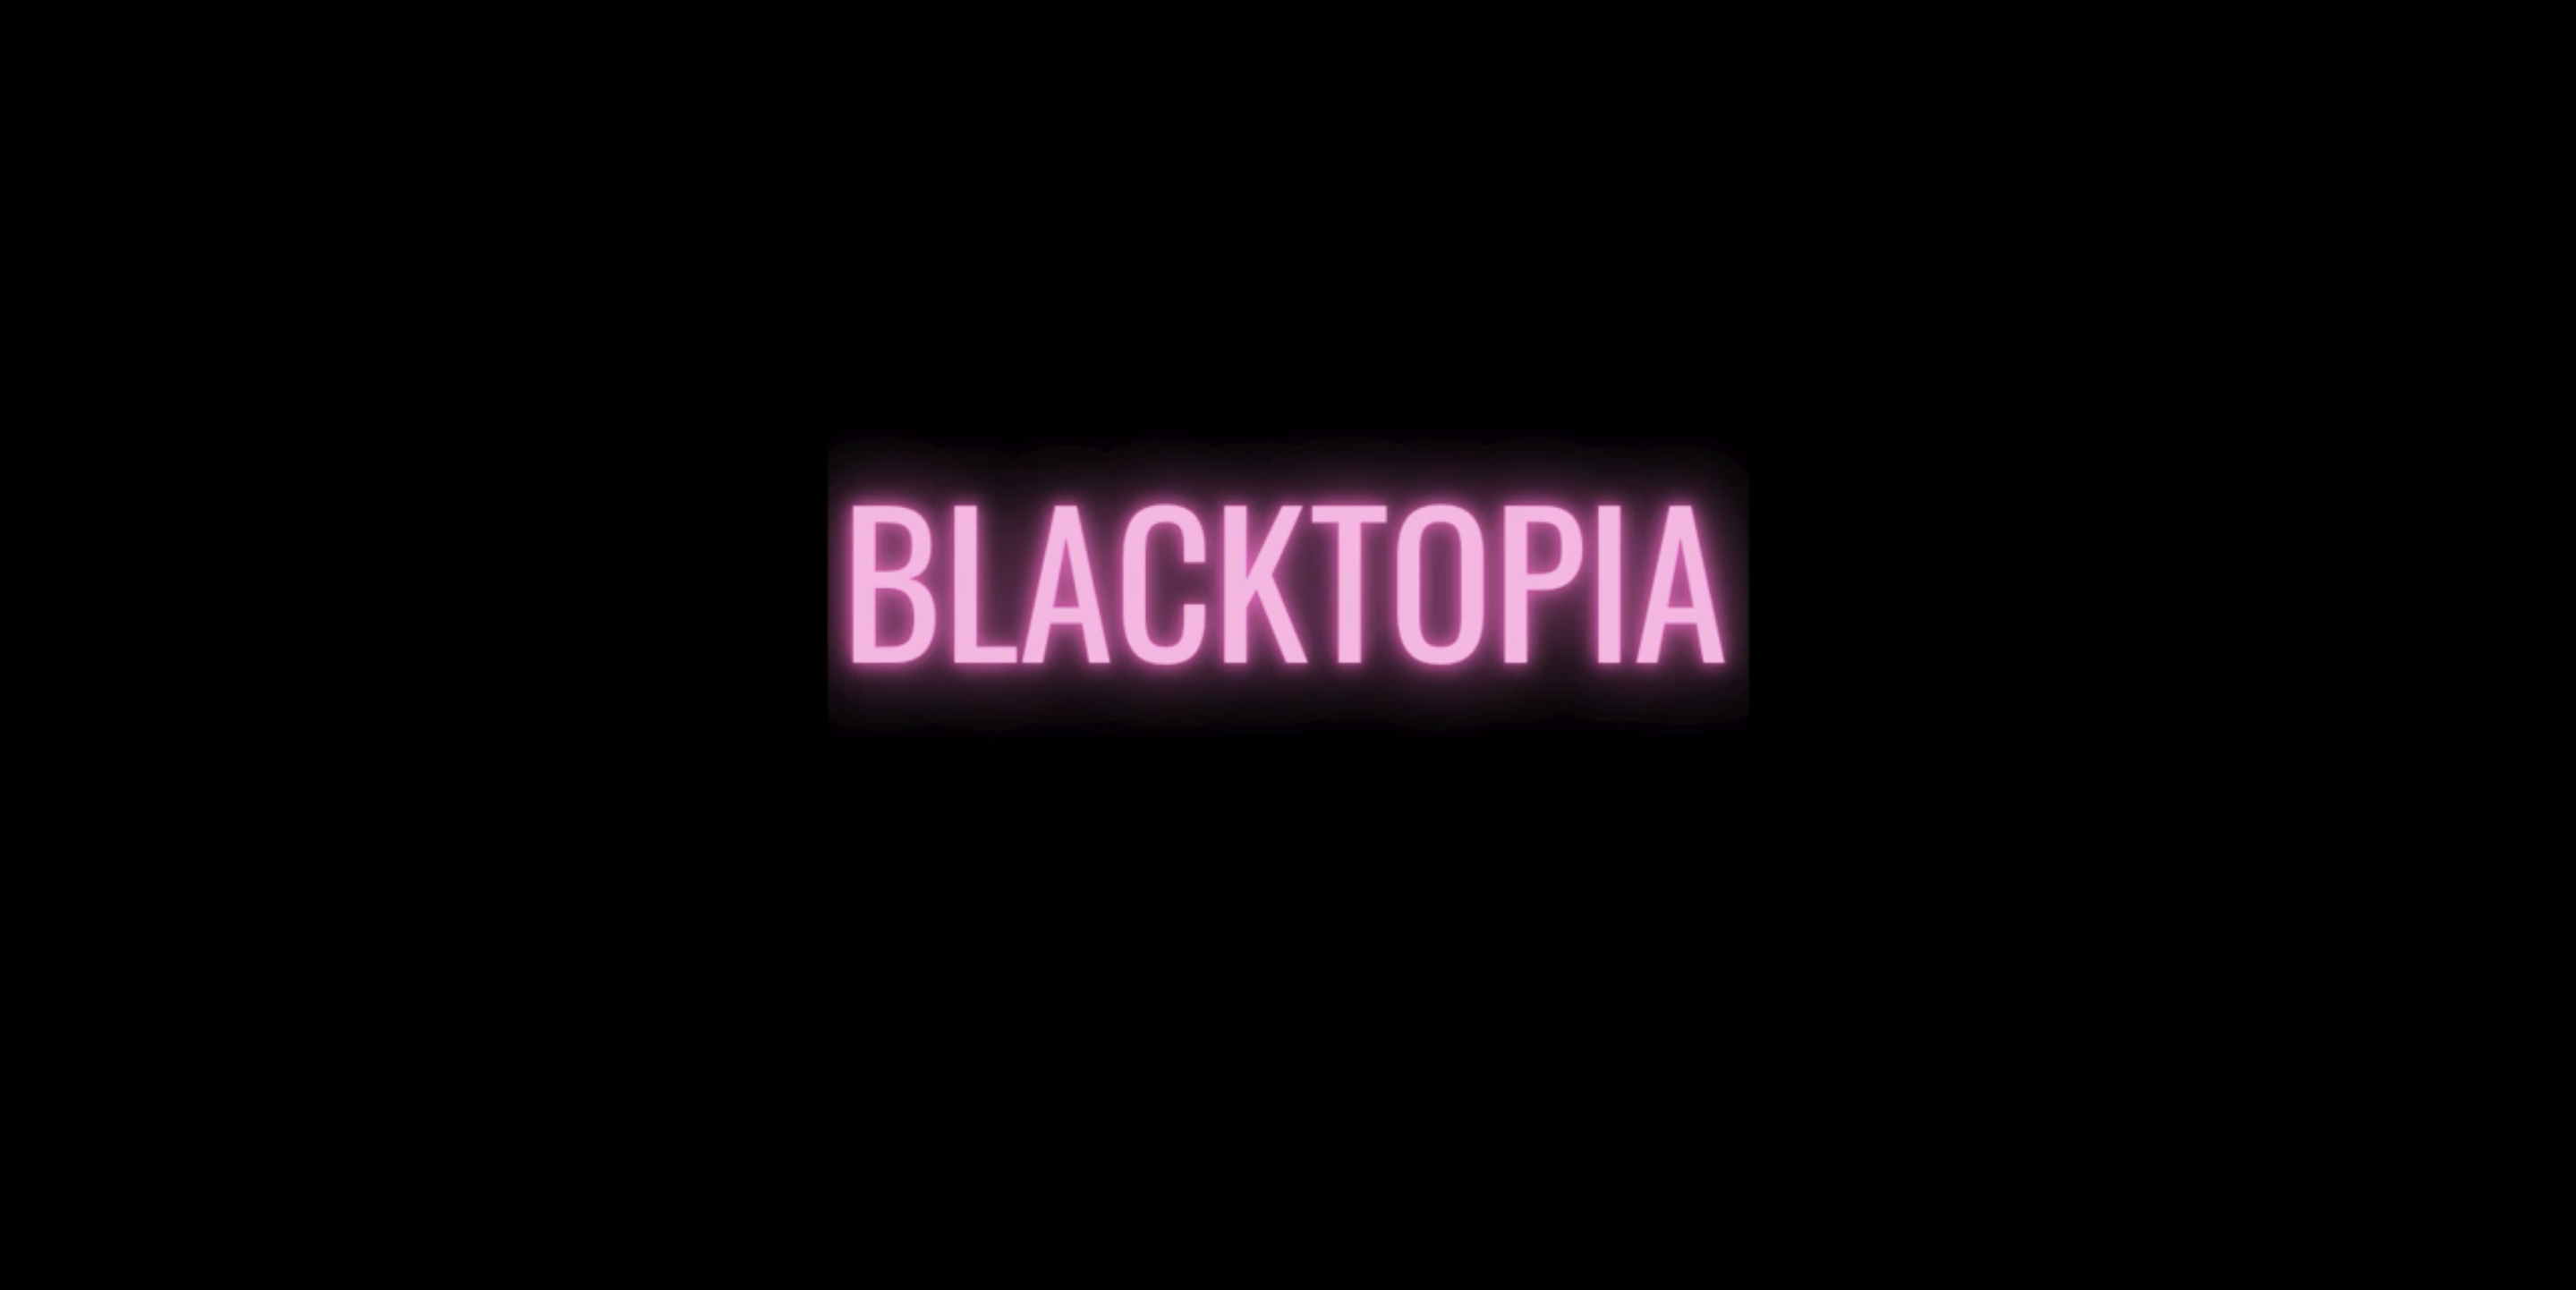 Listen to the Pilot Audio Series to Episode 5 of Blacktopia